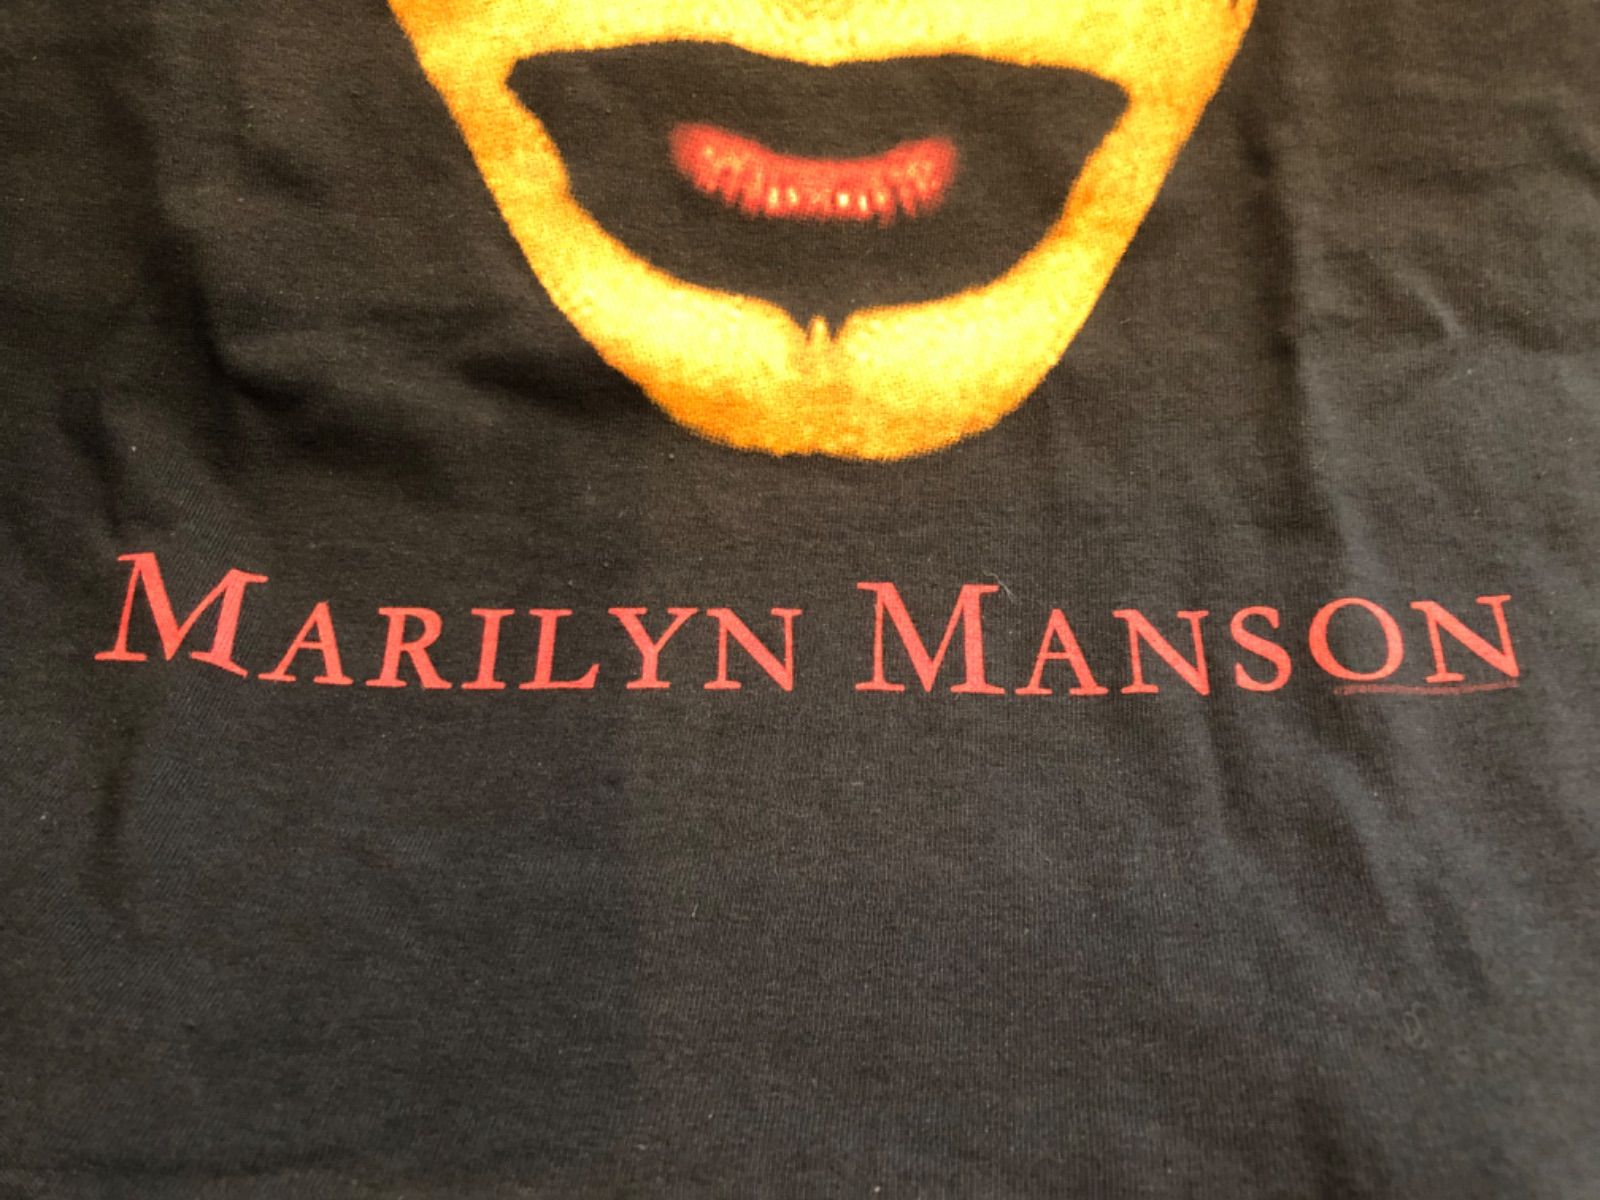 マリリンマンソン sex is dead Tシャツ XL mansonコピーライト©有り